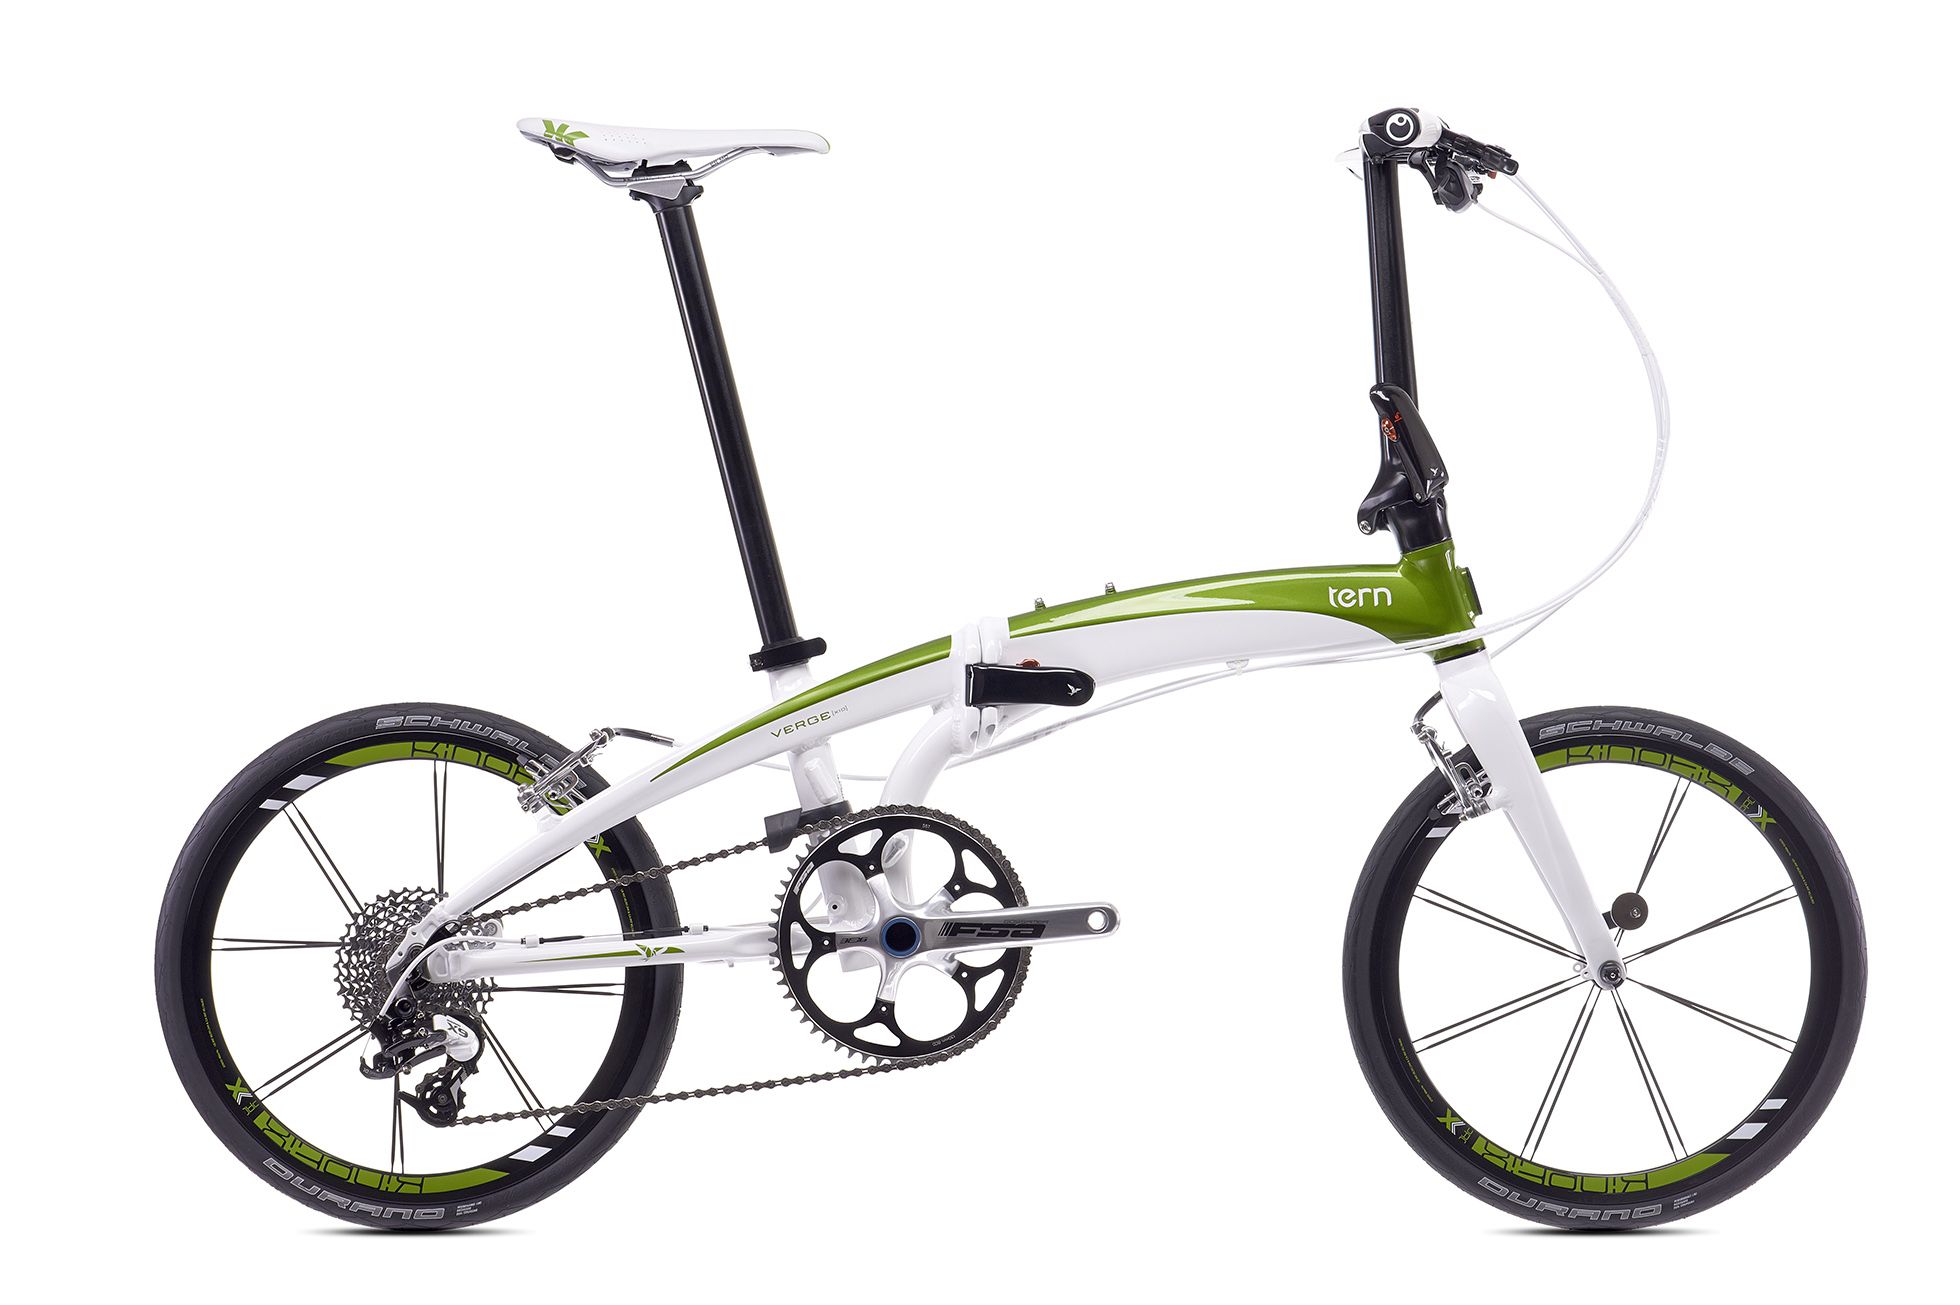  Велосипед Tern Verge X10 2016